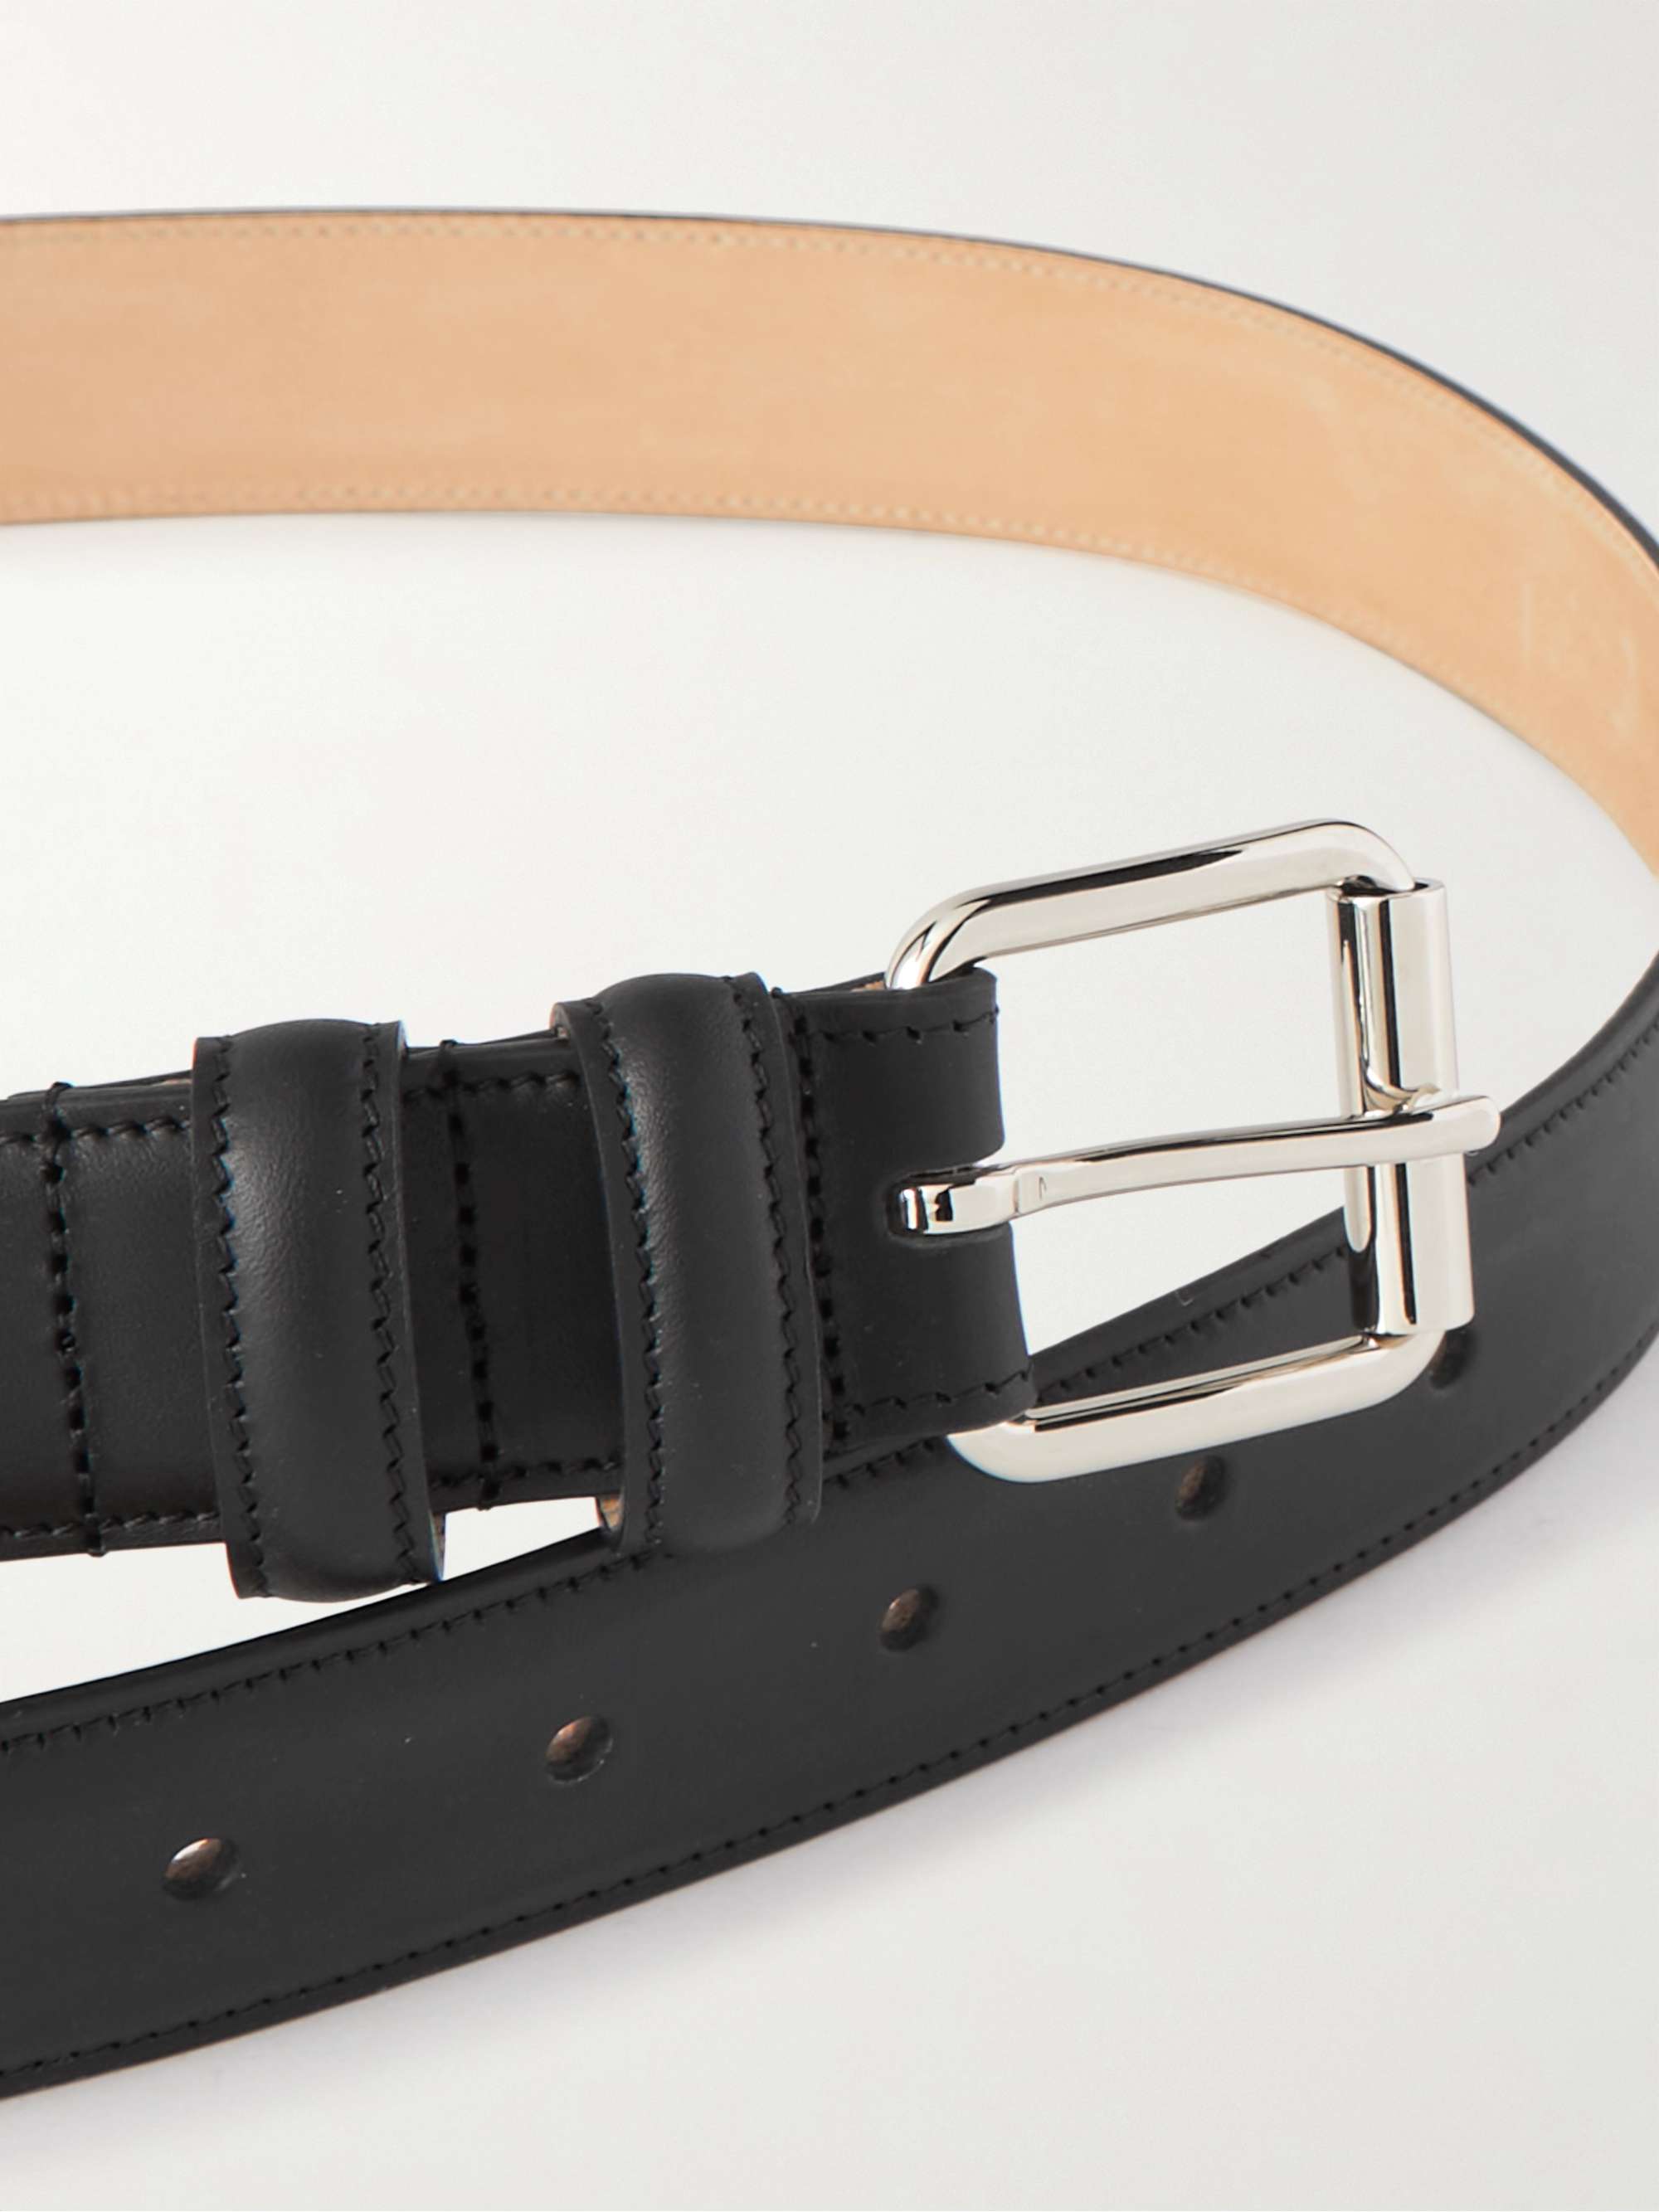 A.P.C. 3cm Paris Leather Belt